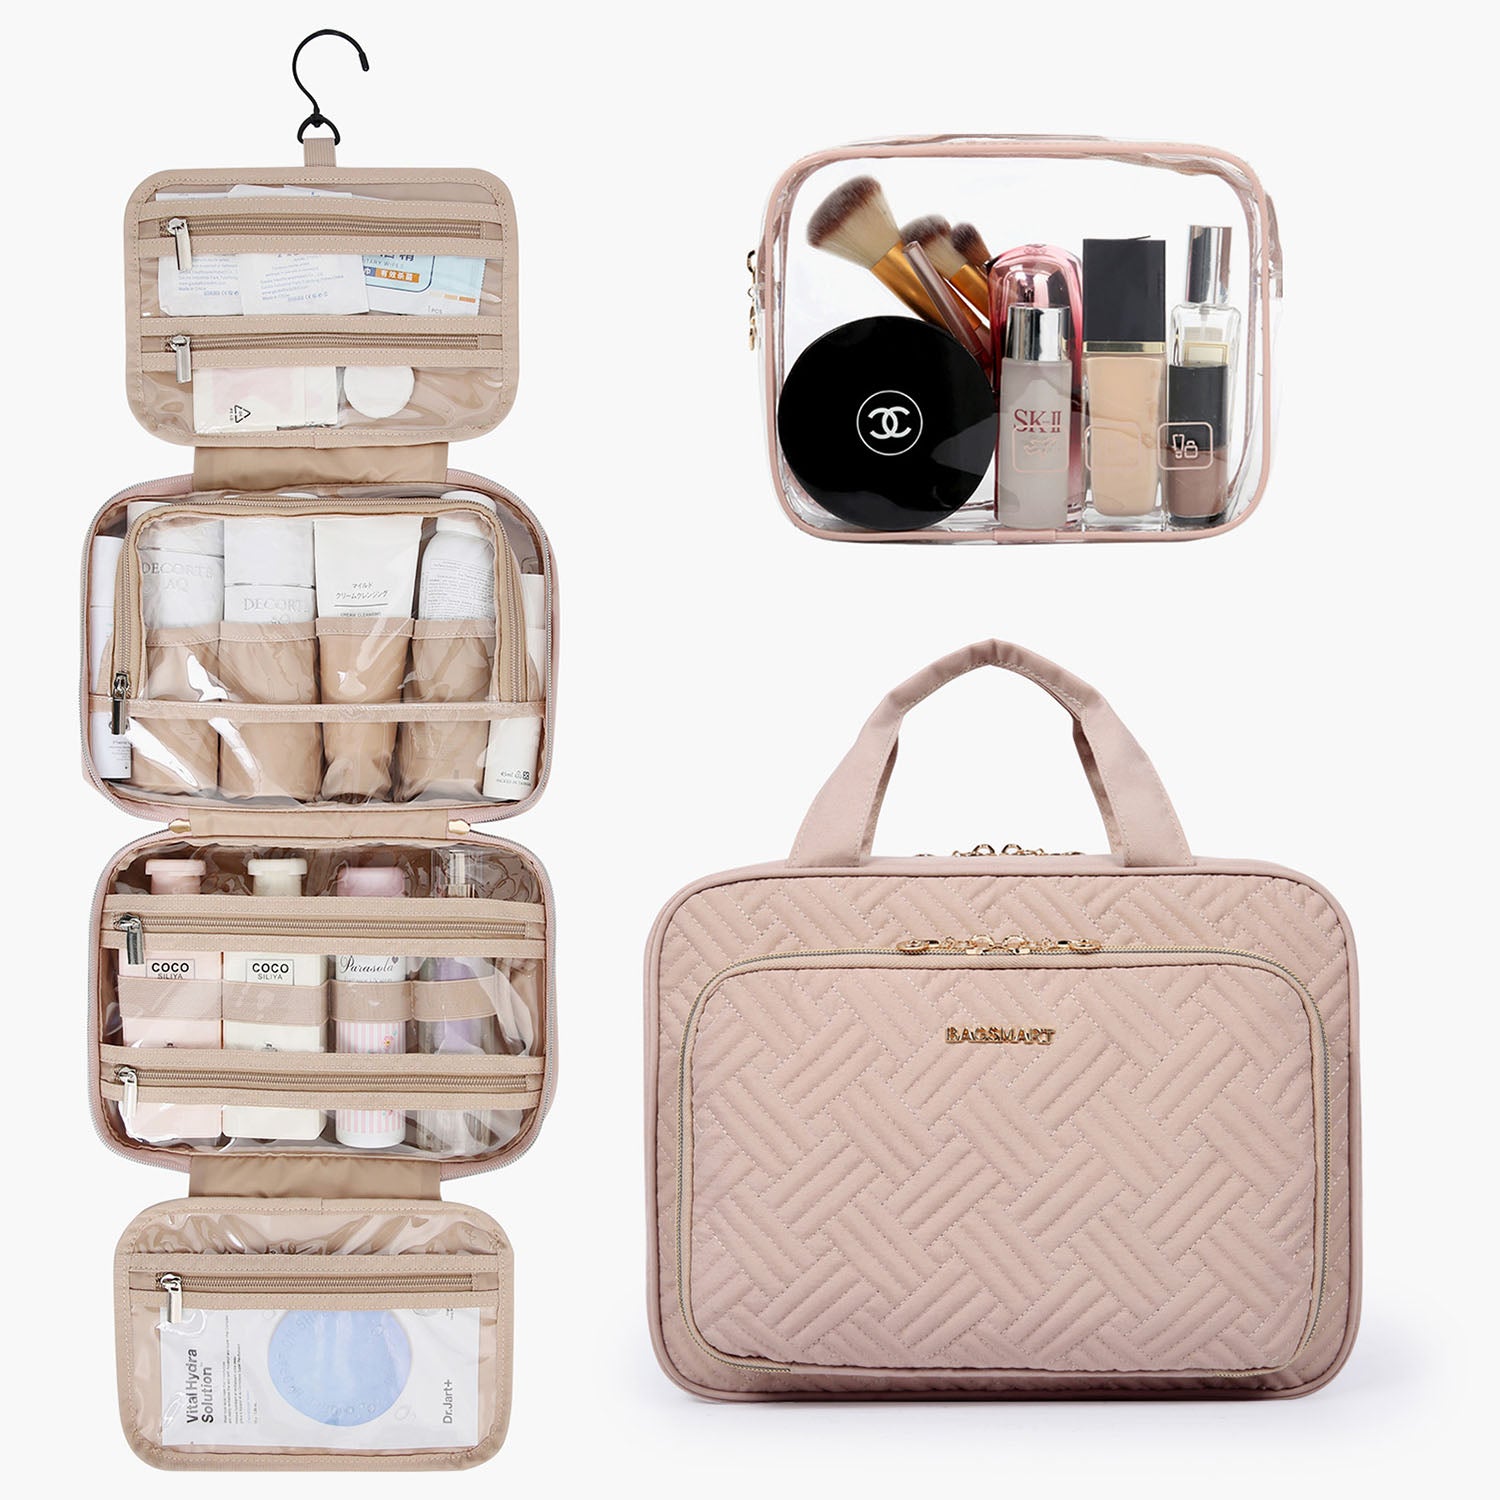  Travel Makeup Bag, Large Capacity Cosmetic Bag